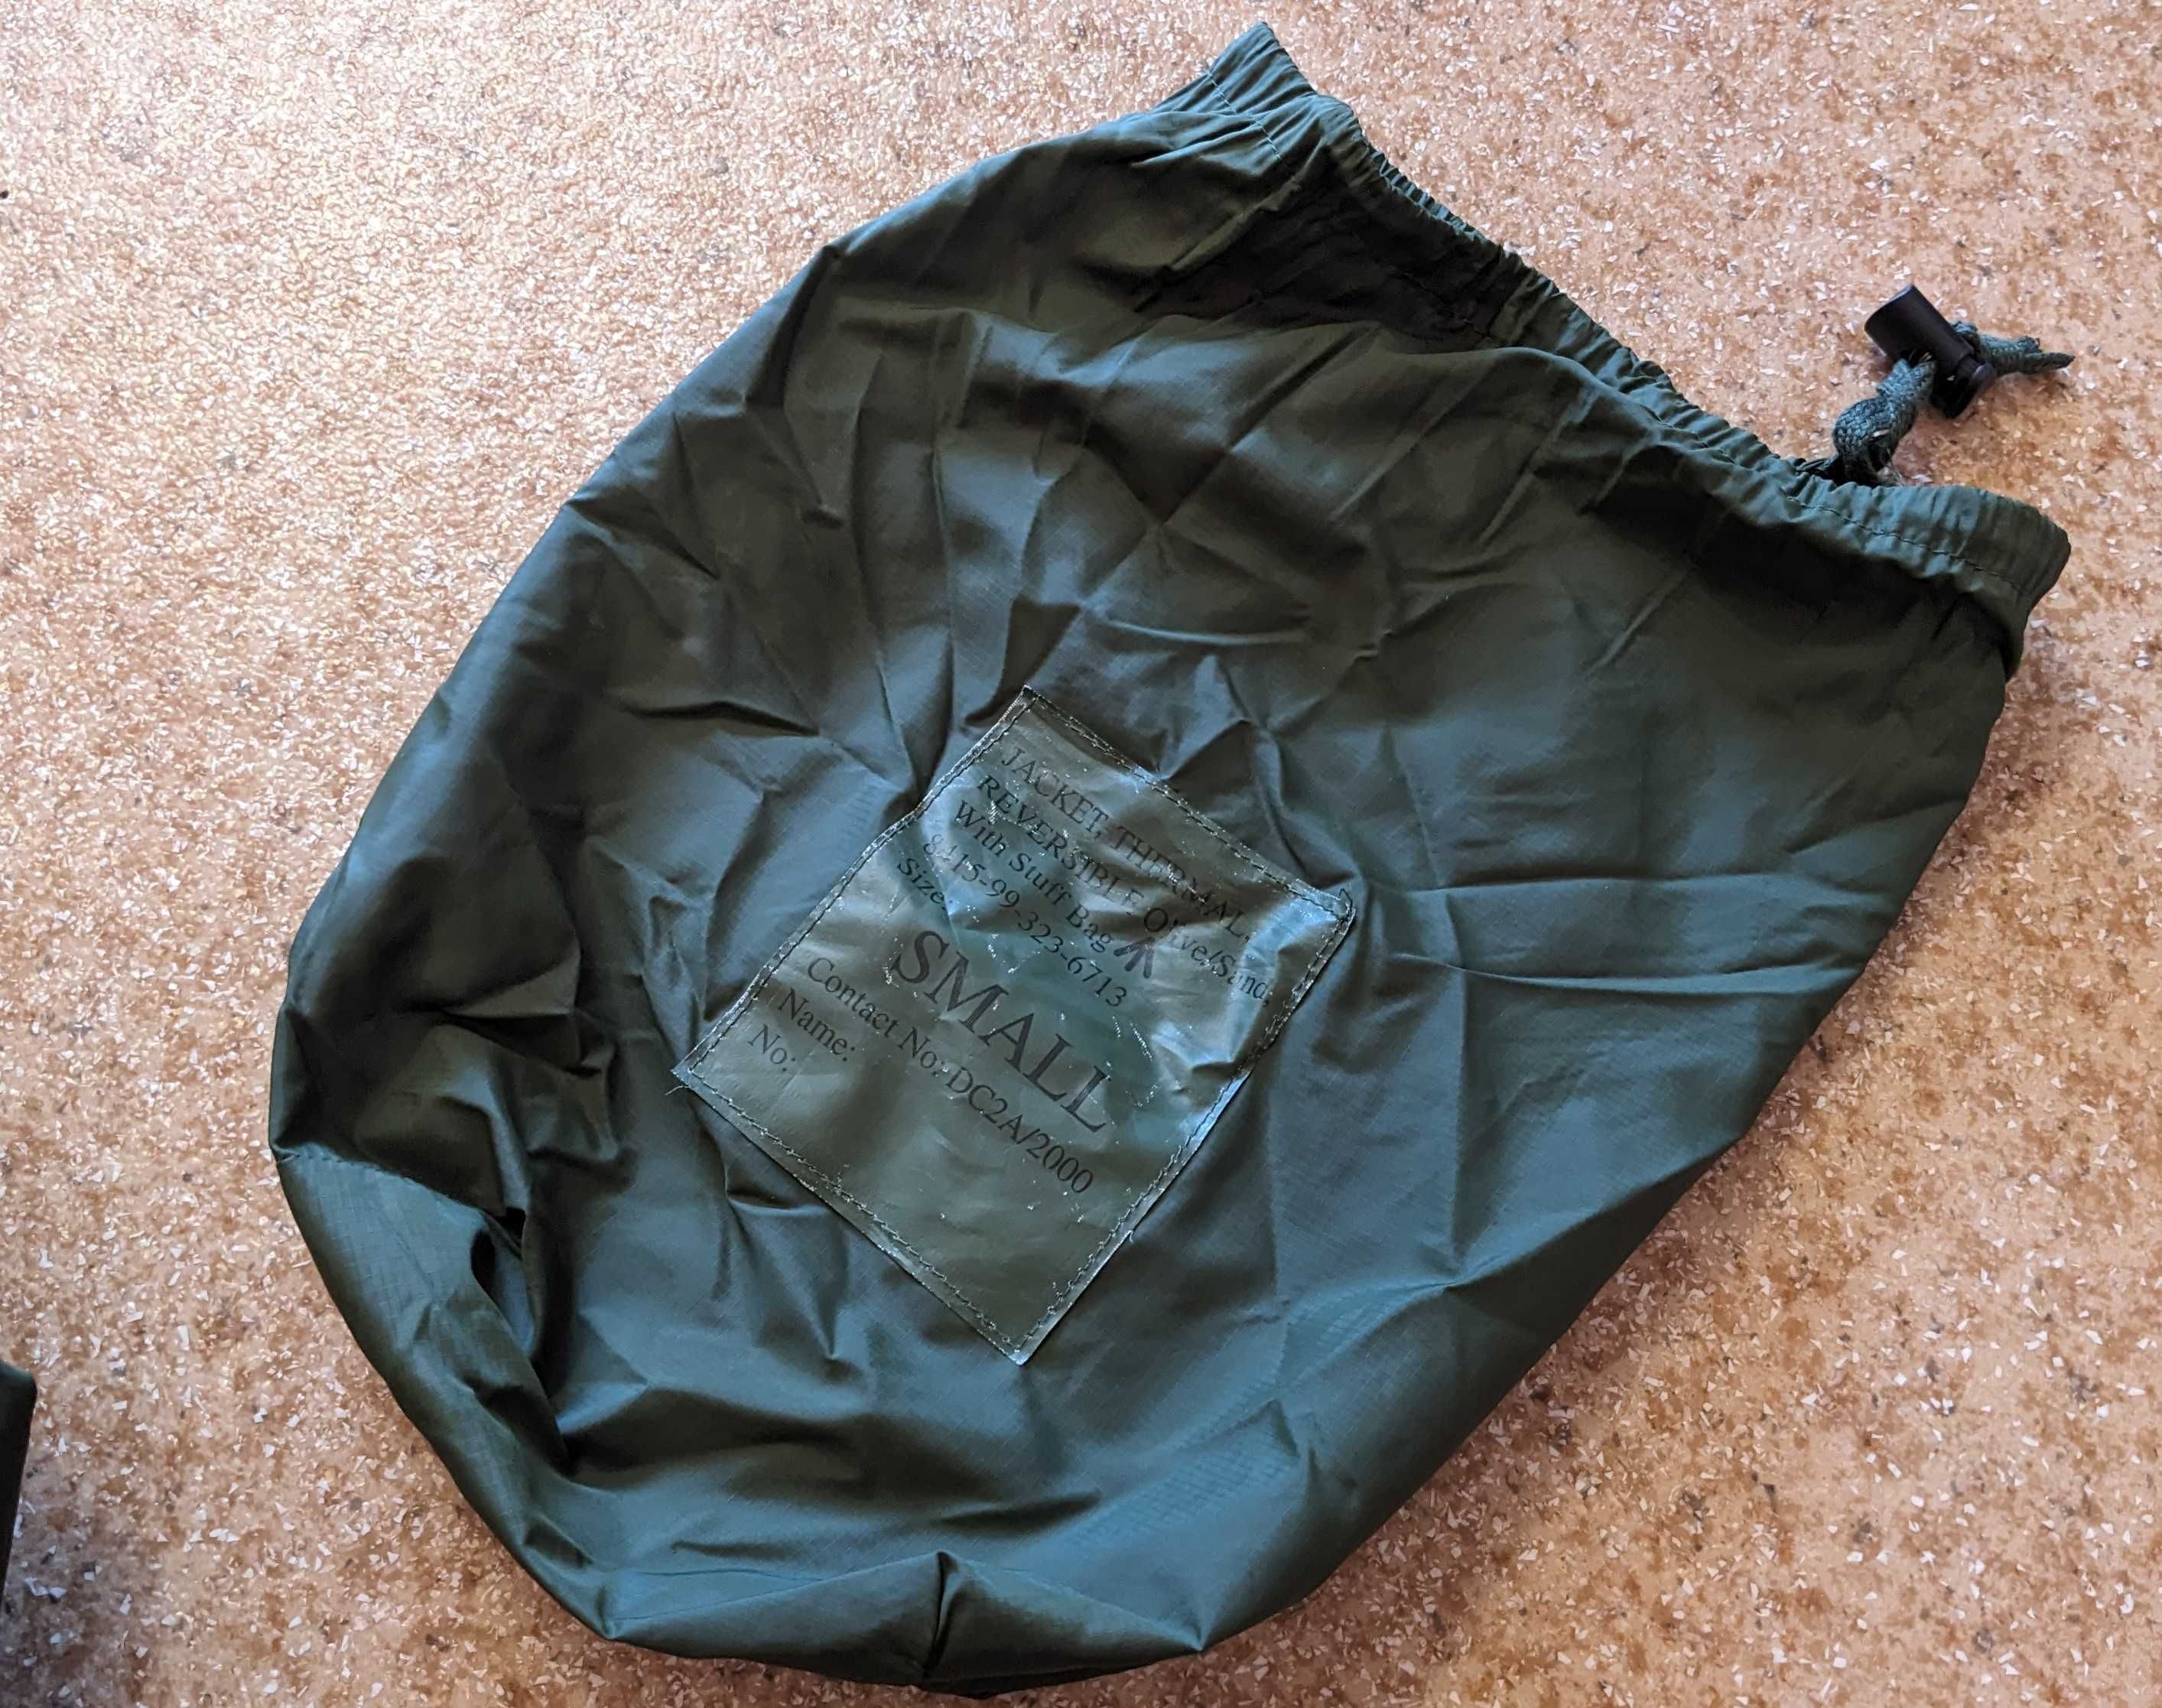 Британская реверсивная куртка - Jacket Thermal Reversible